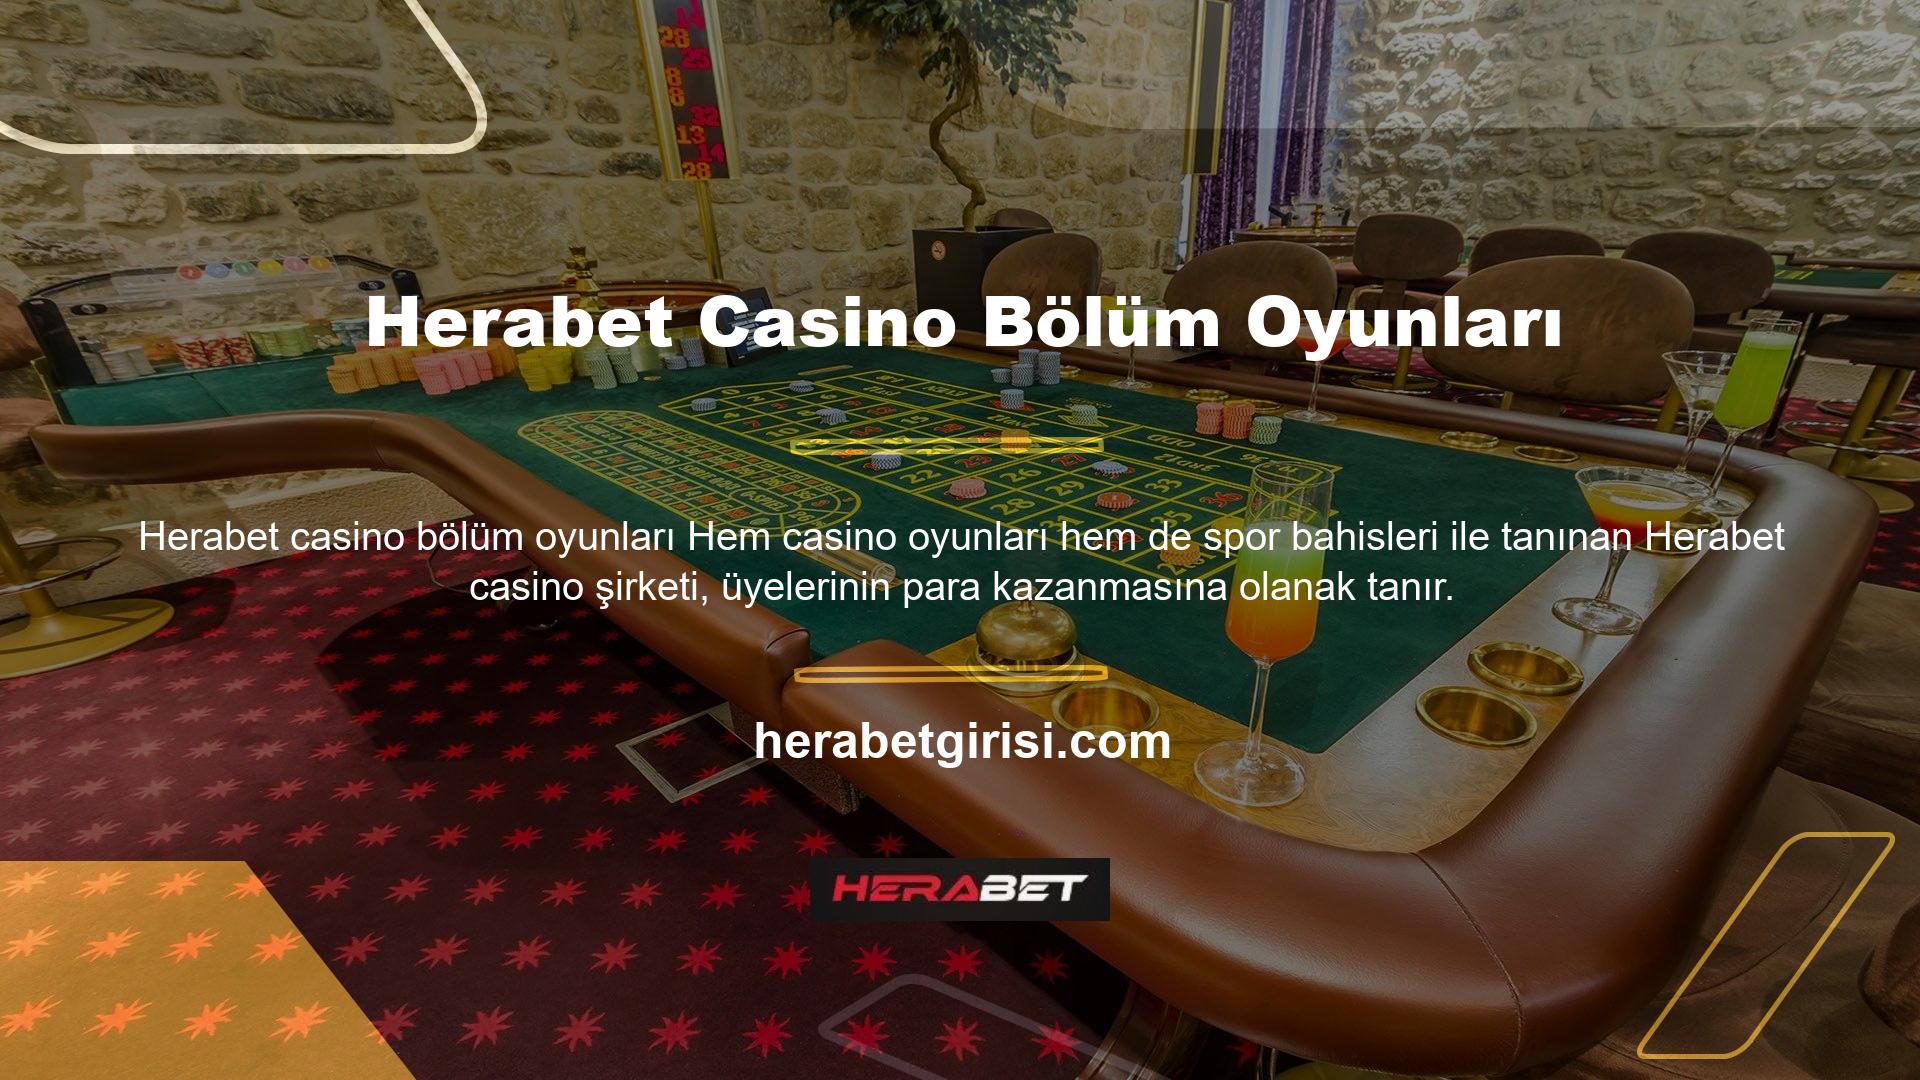 Casino oyunları arasında rulet ve poker gibi masa oyunları Herabet günümüzdeki pahalı türleridir